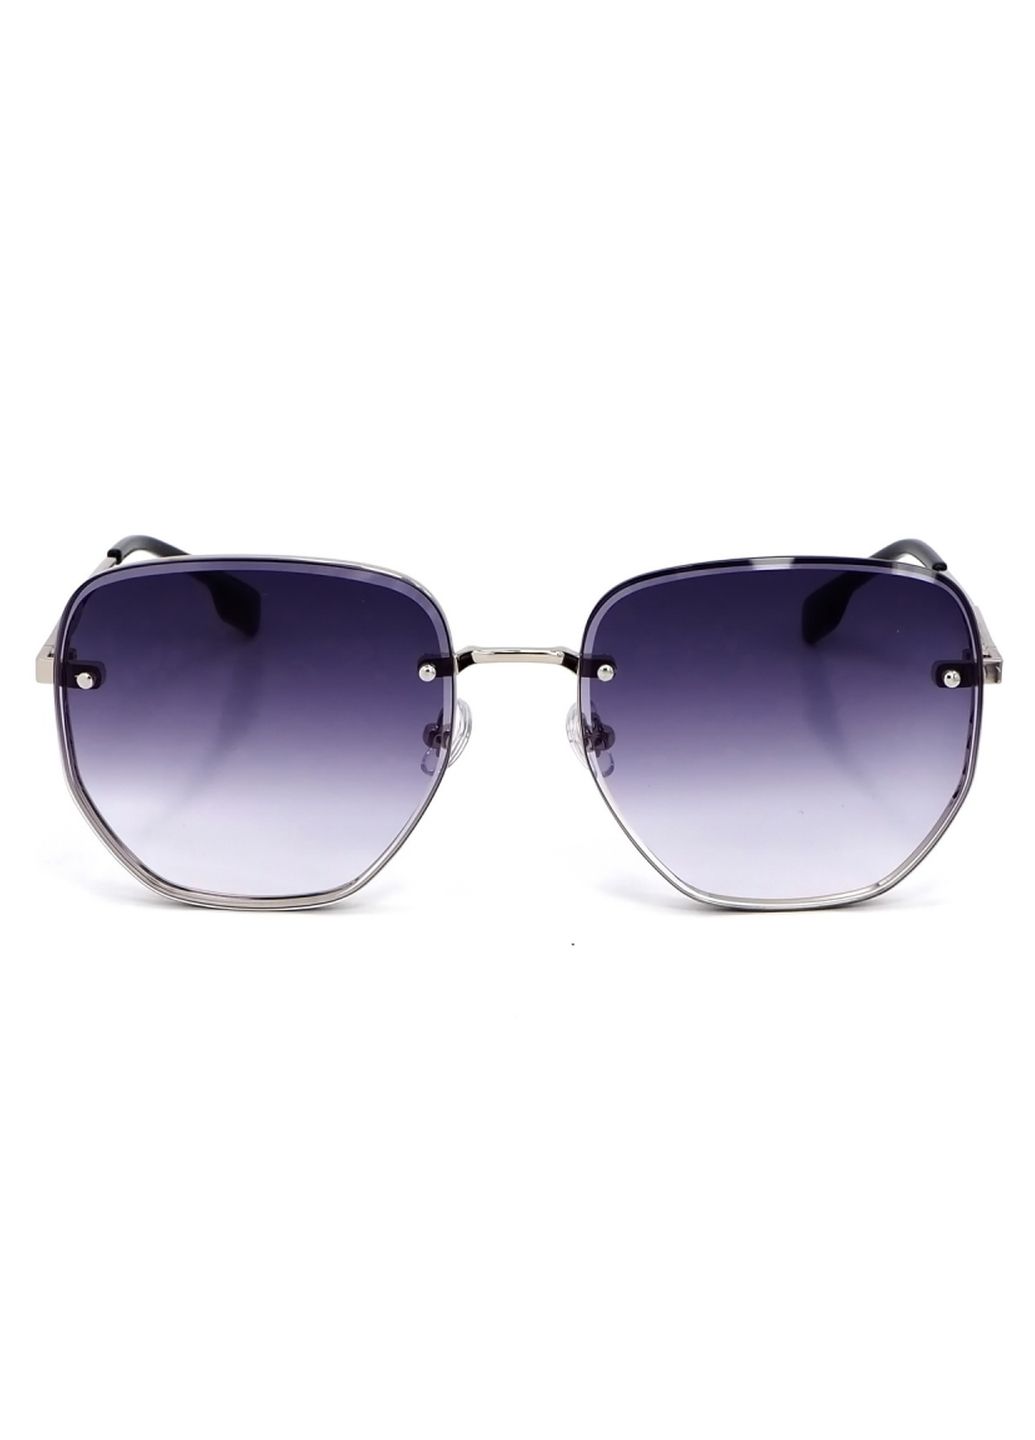 Купить Женские солнцезащитные очки Merlini с поляризацией S31843 117130 - Серебристый в интернет-магазине